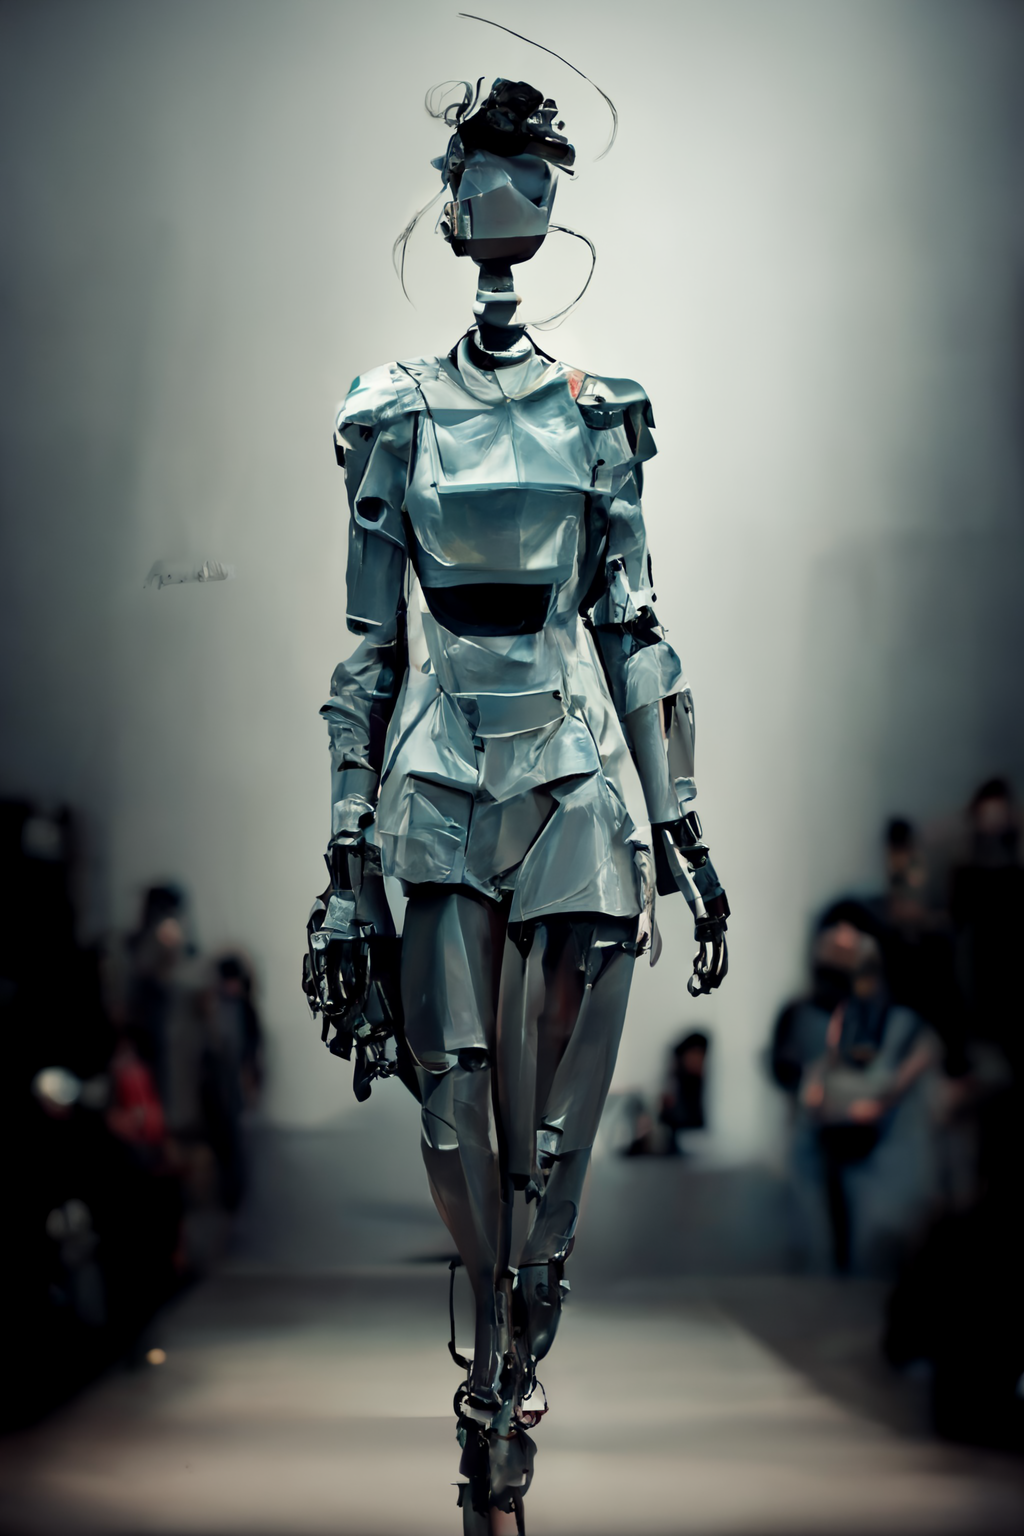 Robot fashion week